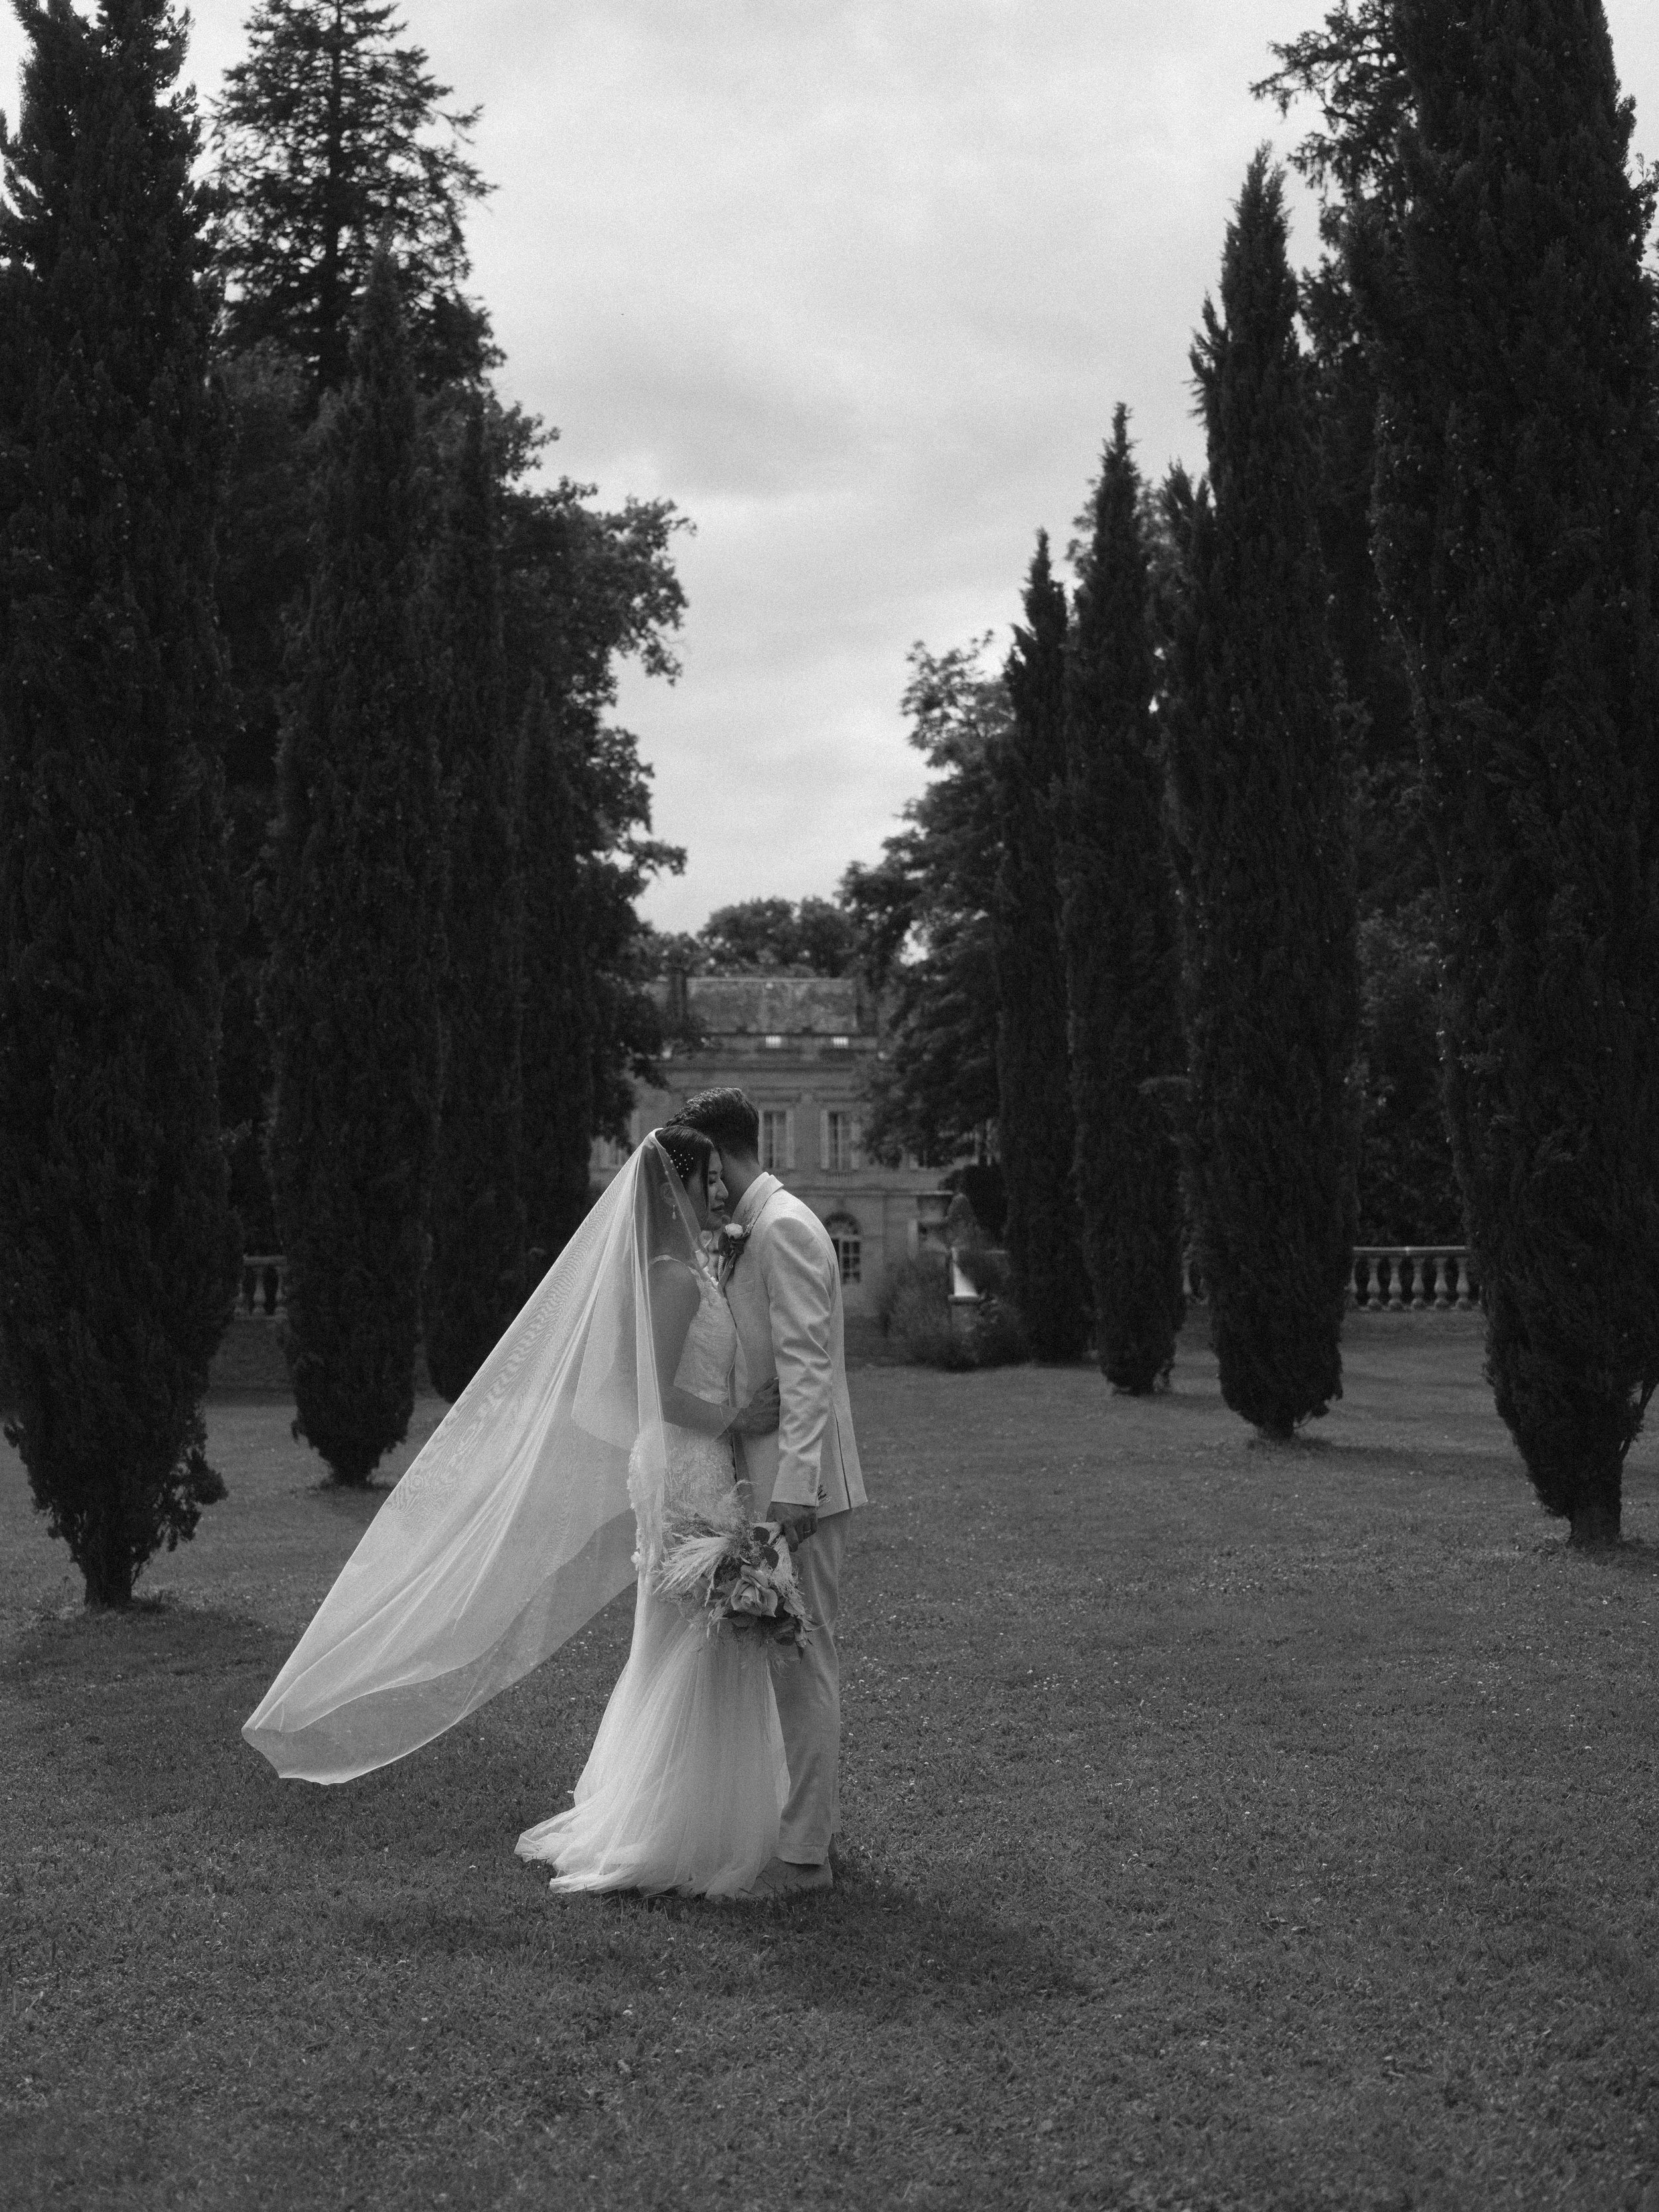  Chateau la durantie couples photos wedding photographer 